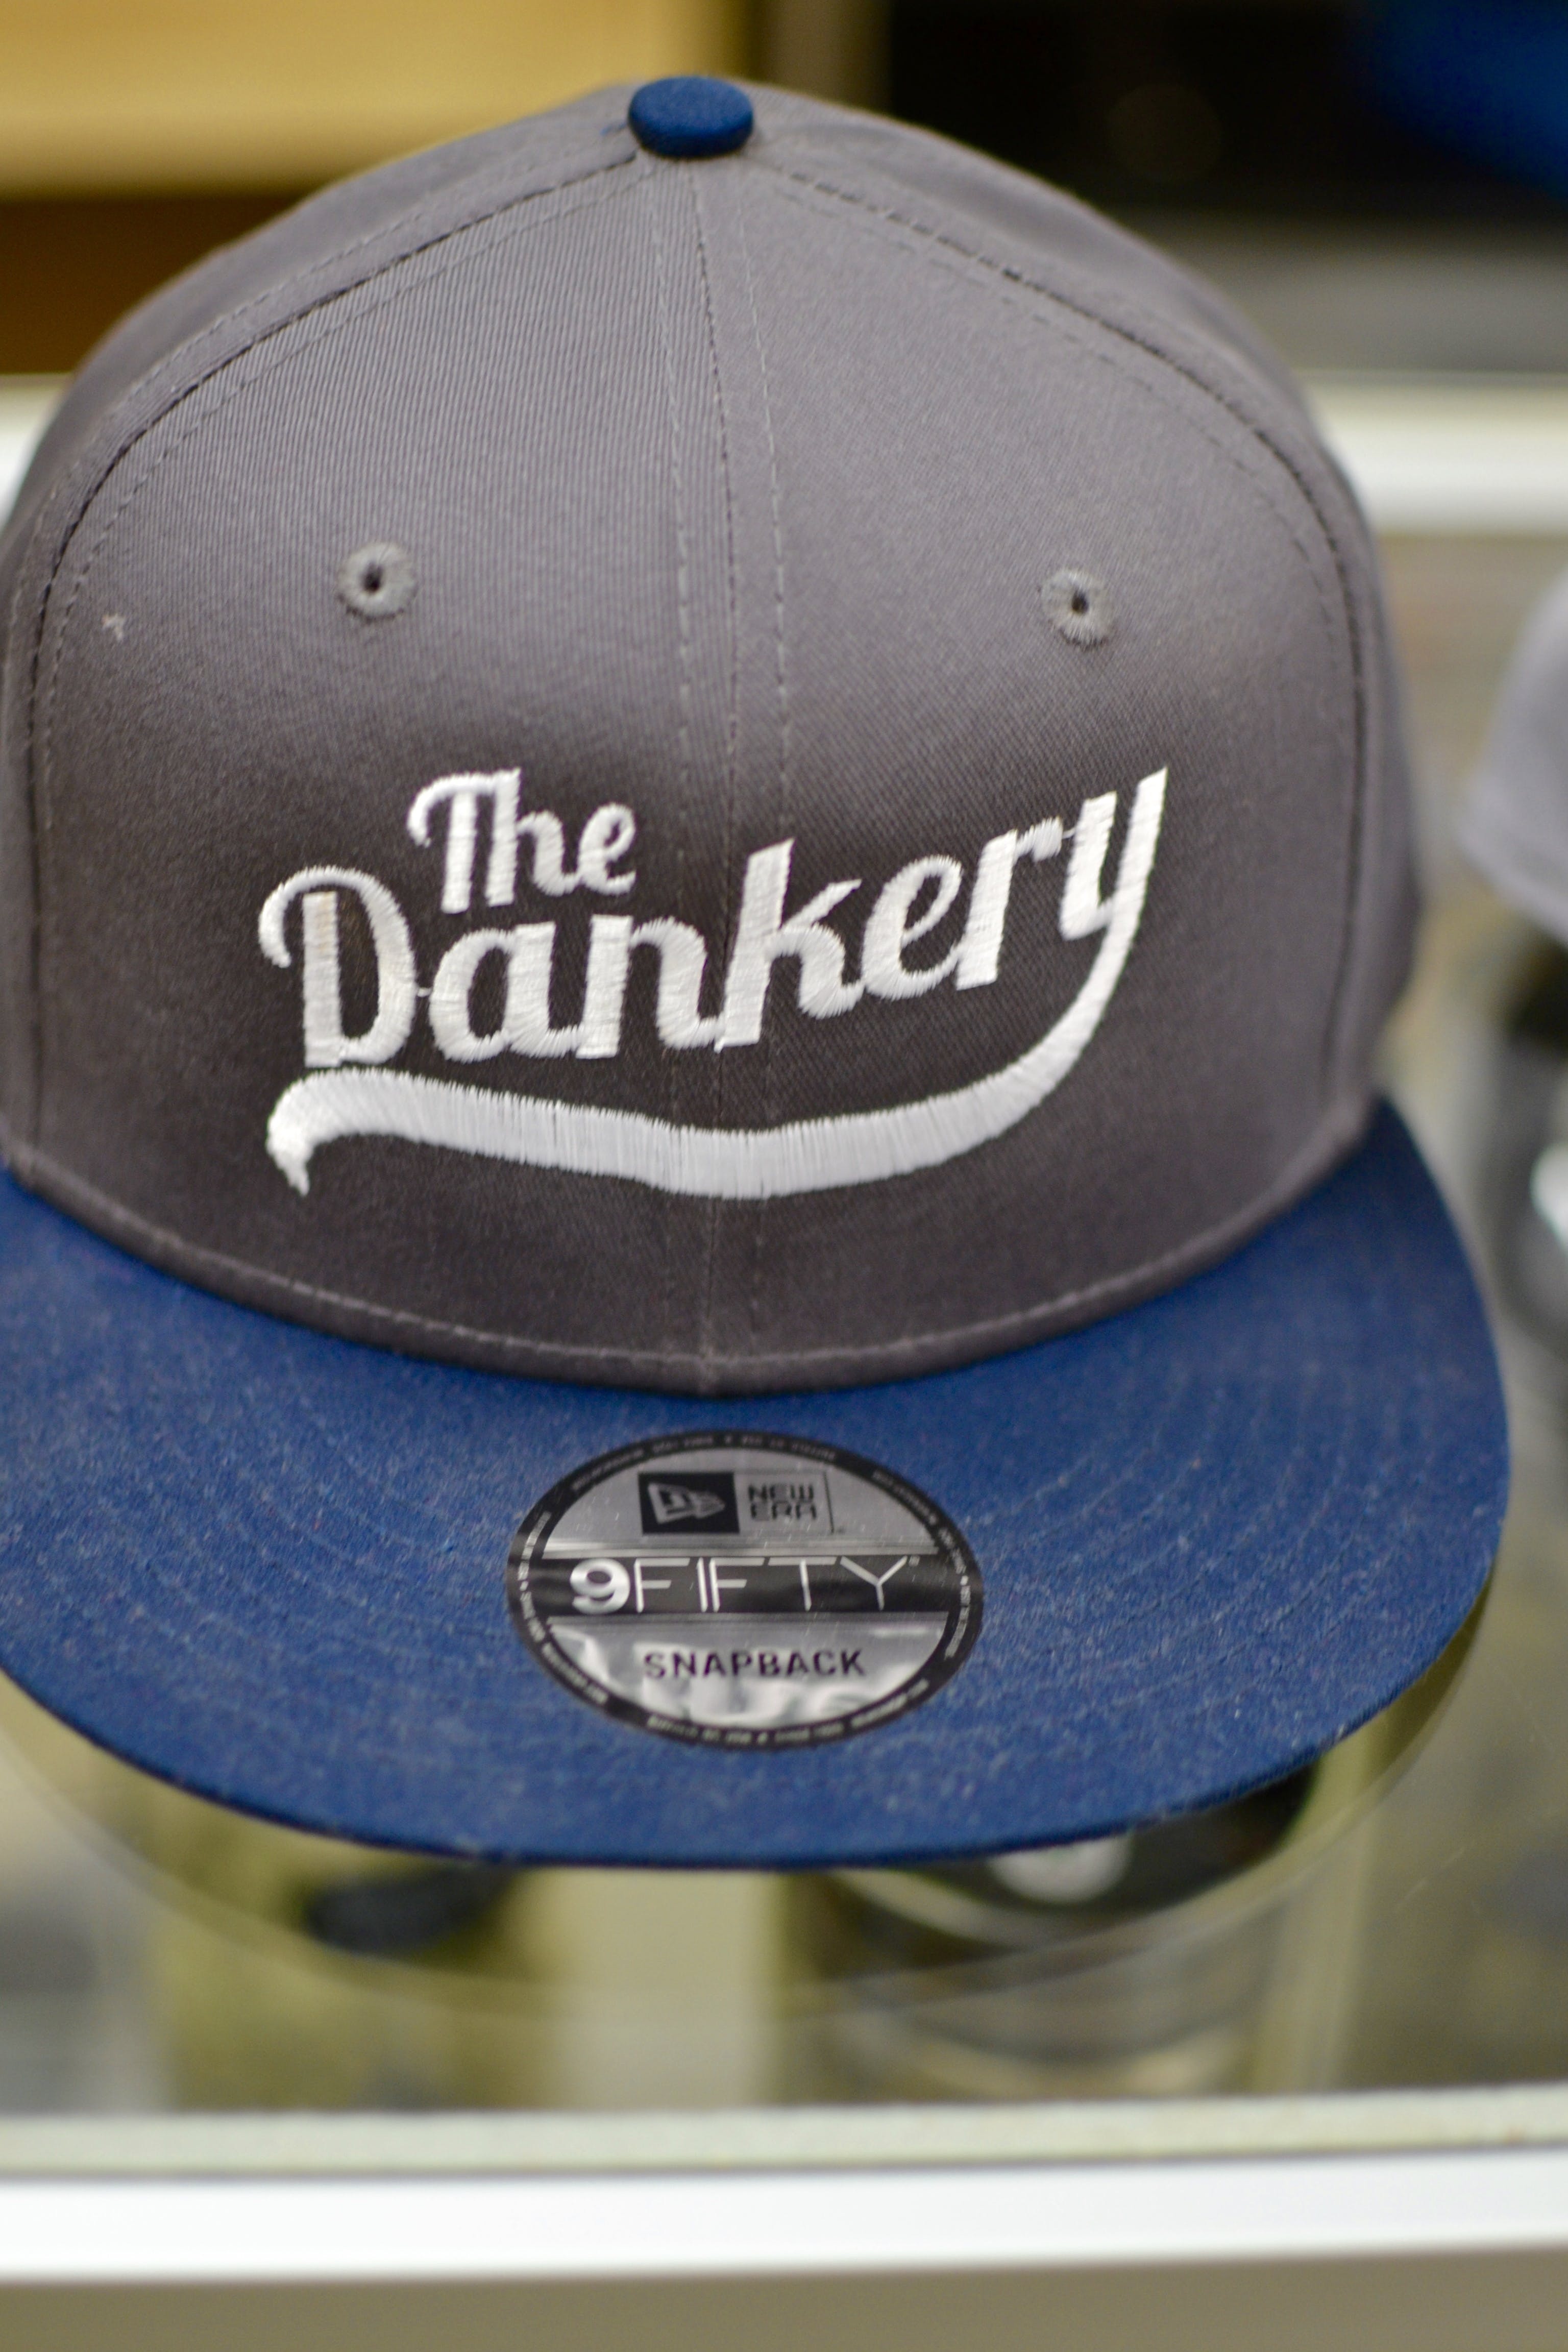 gear-dankery-logo-snap-back-hat